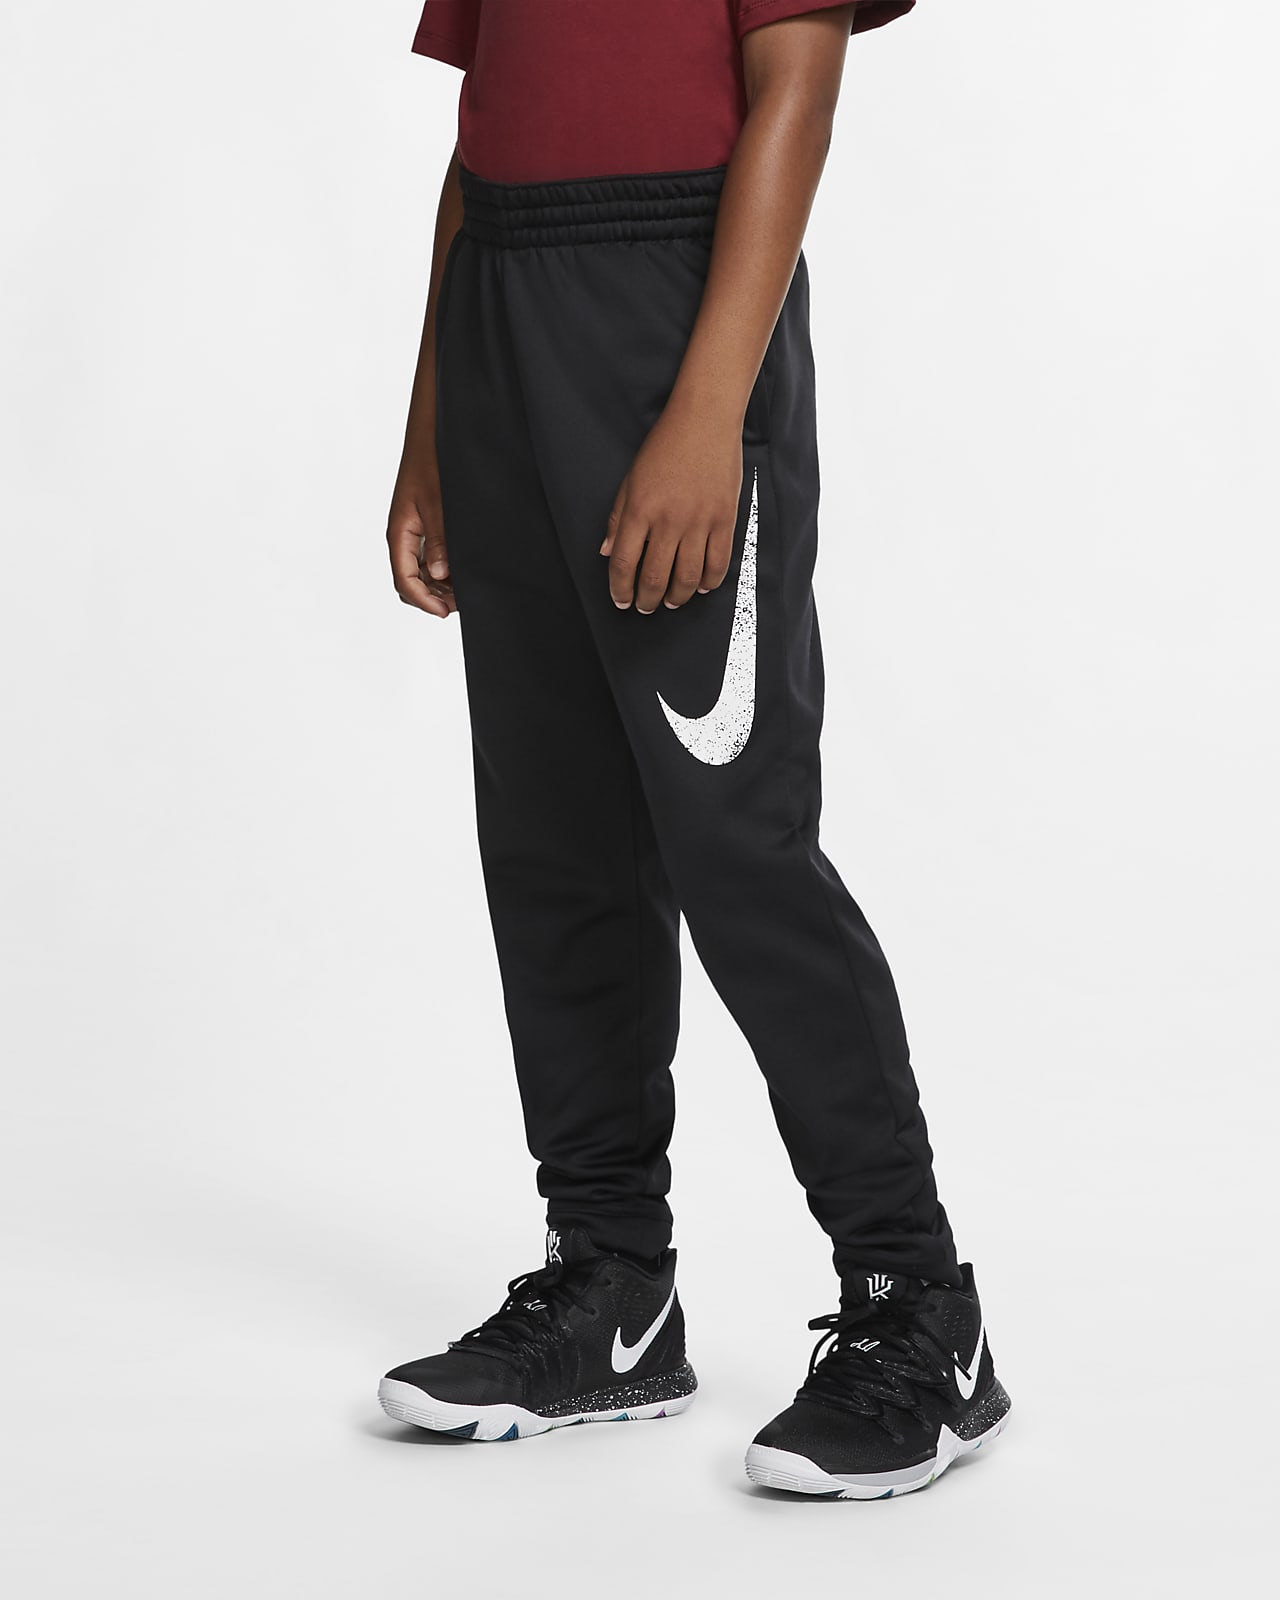 Nike Therma Big Kids' (Boys') Basketball Pants